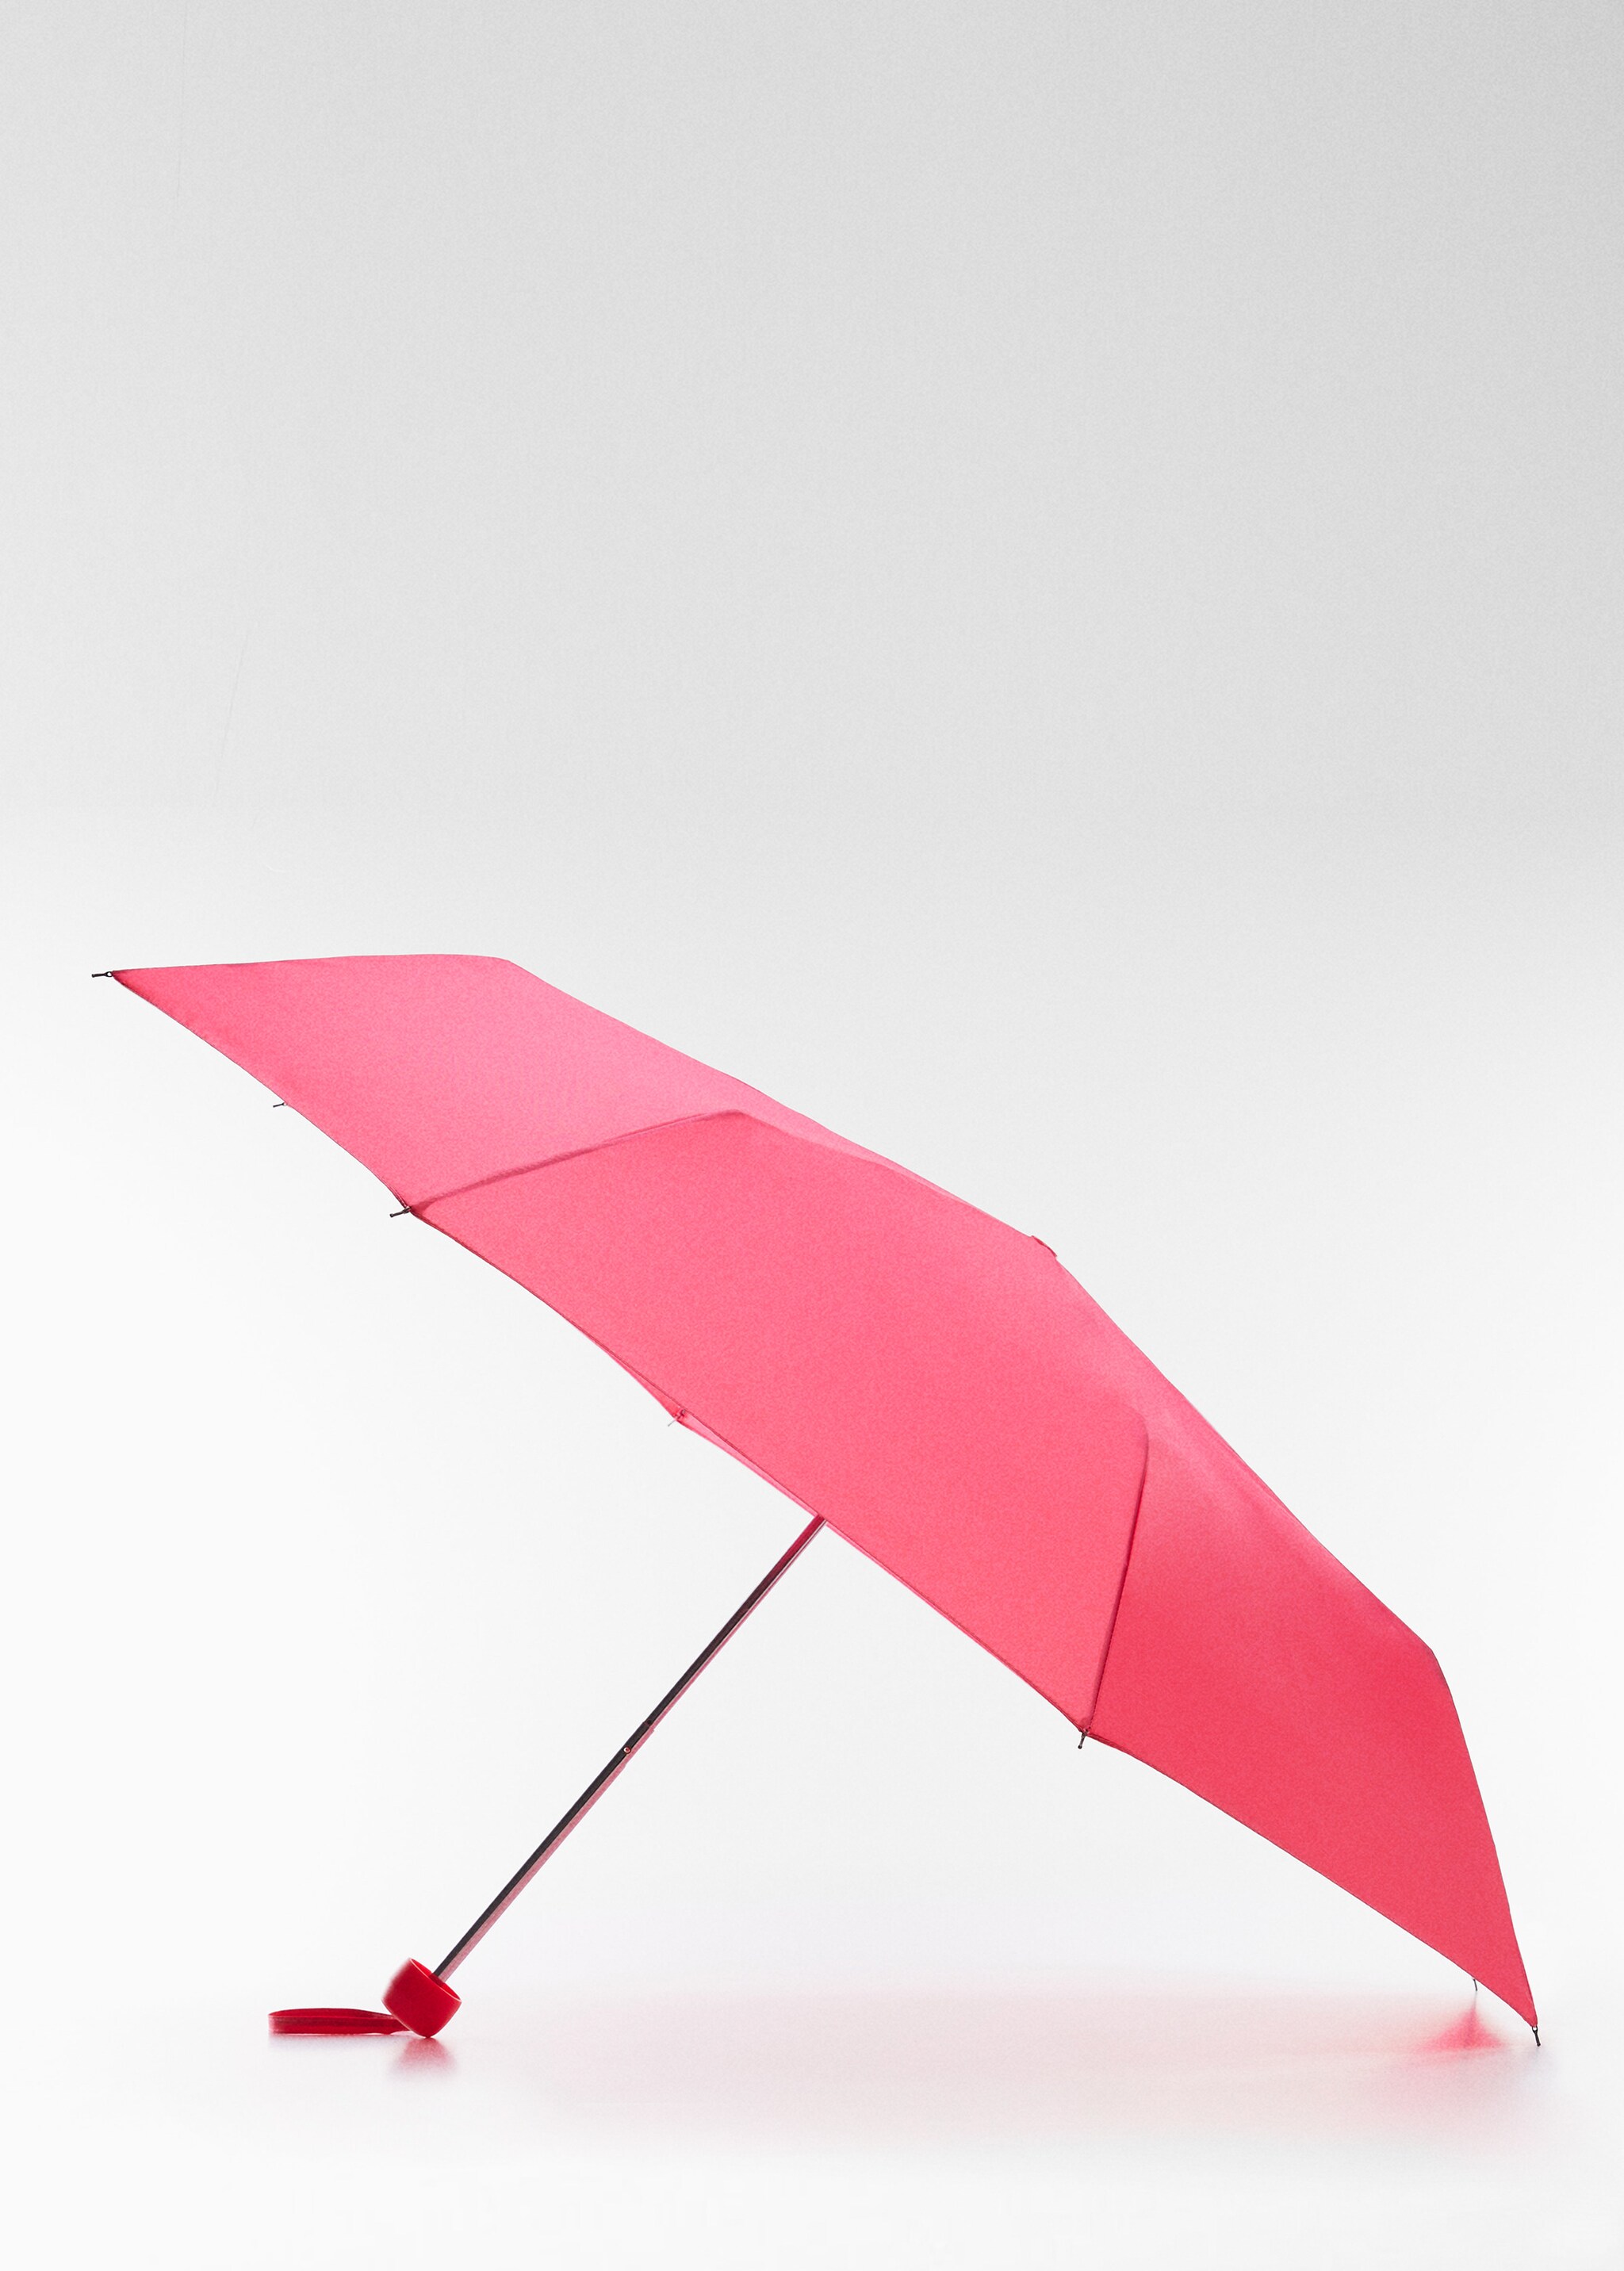 Plain folding umbrella - Medium plane